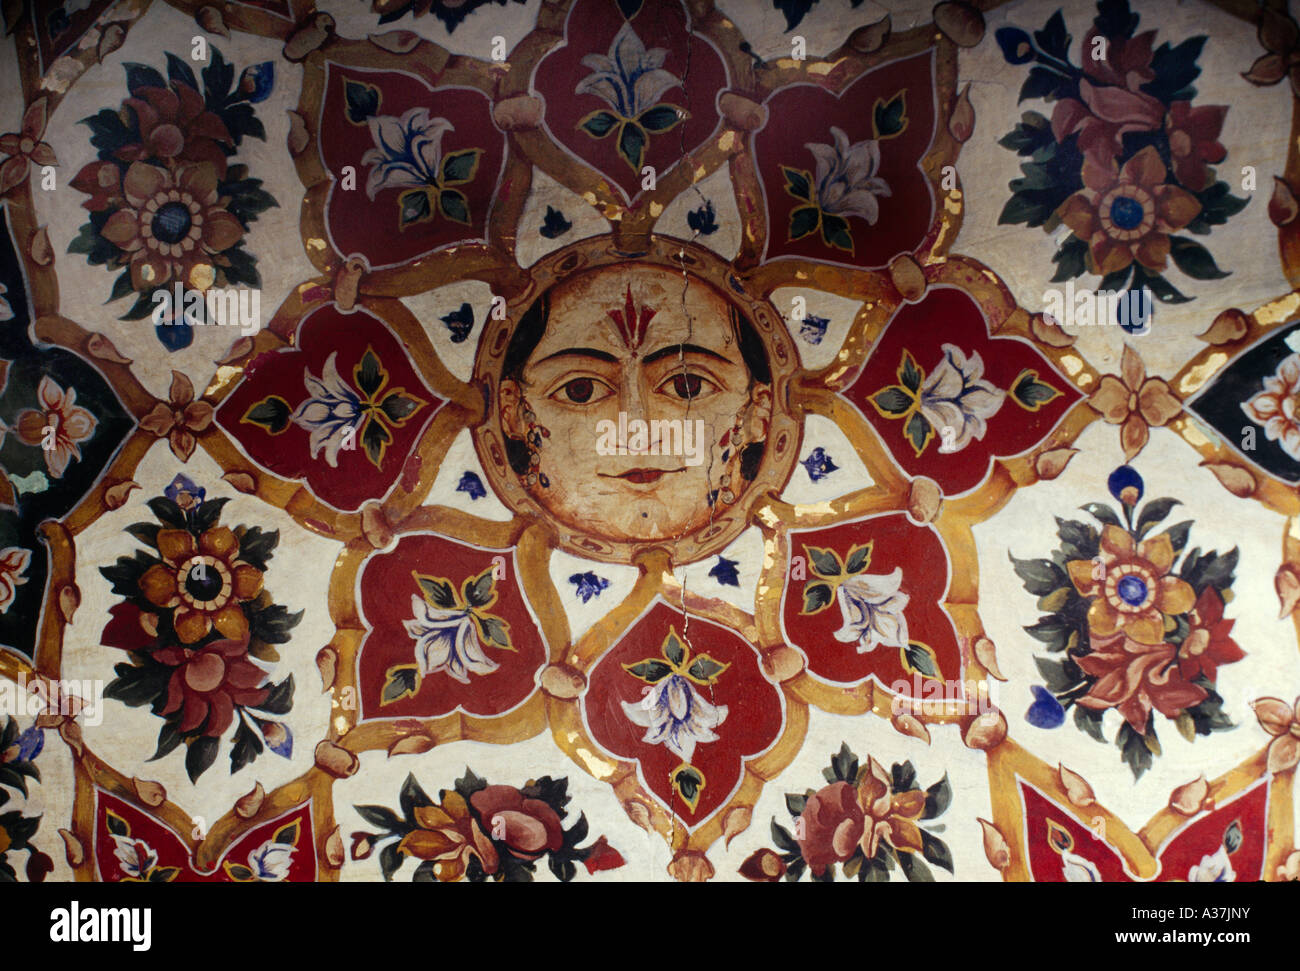 Amritsar India Baba Atol Tower Fresco On Ceiling Stock Photo